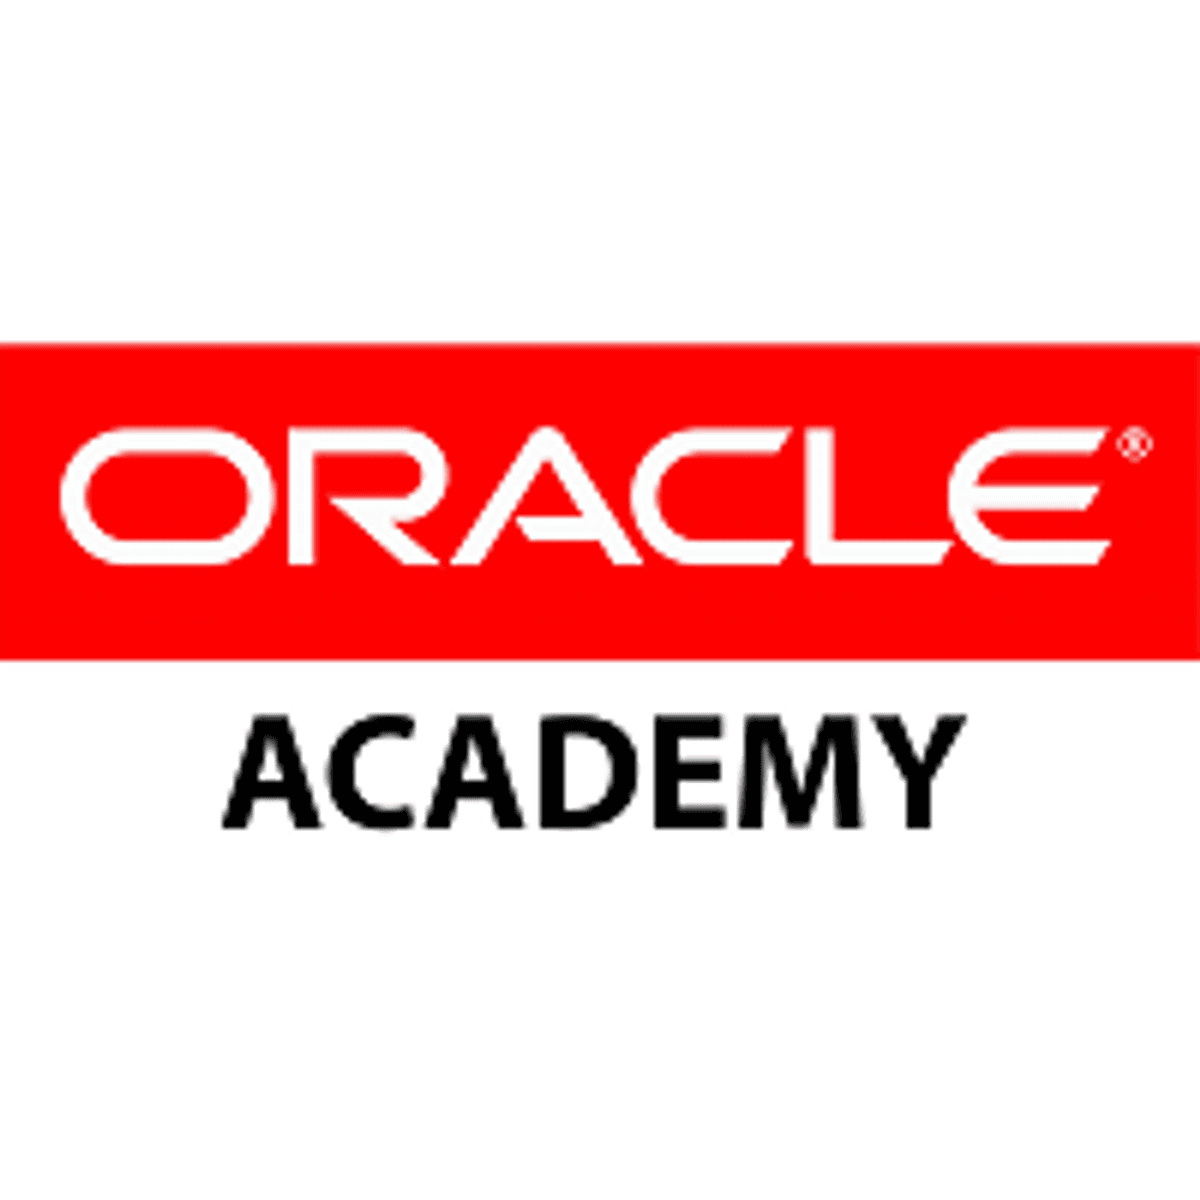 Bloodhound Education Programme en Oracle Academy stimuleren computerwetenschapsonderwijs image